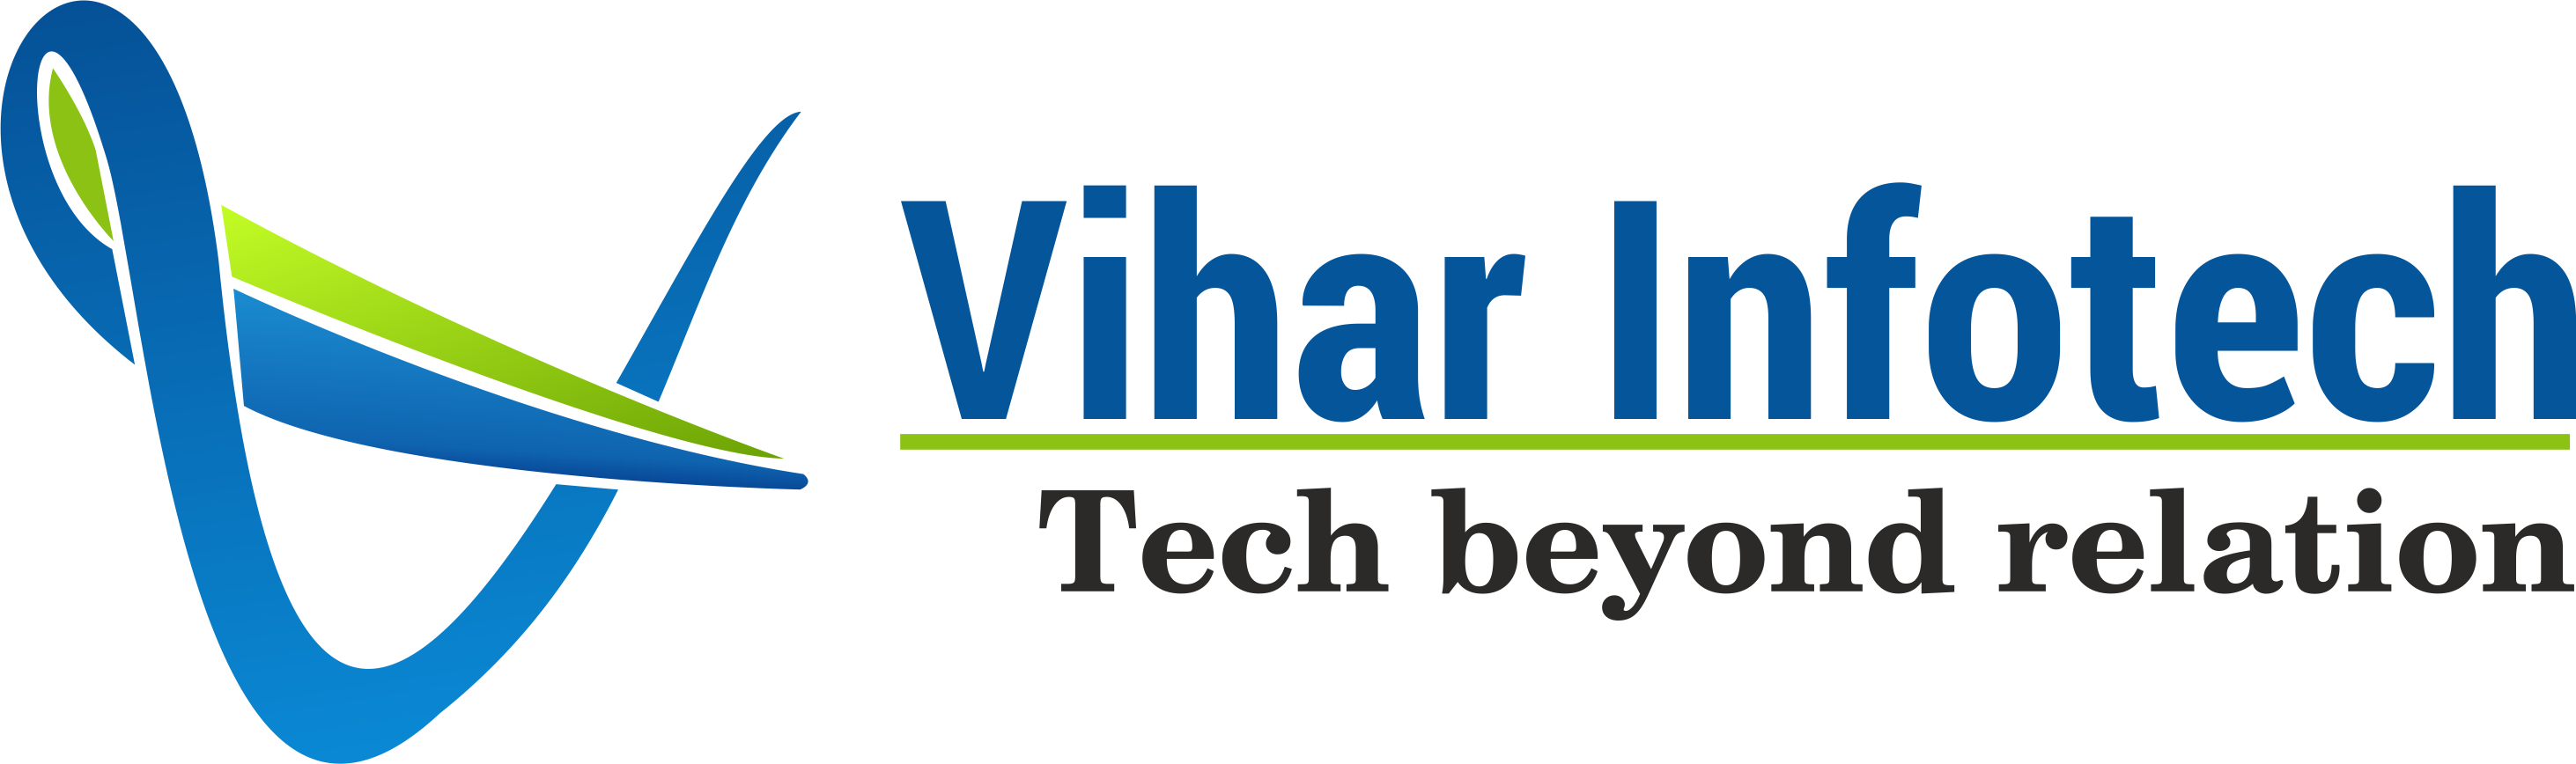 Vihar Infotech Vihar Infotech - United Nations (2925x868)